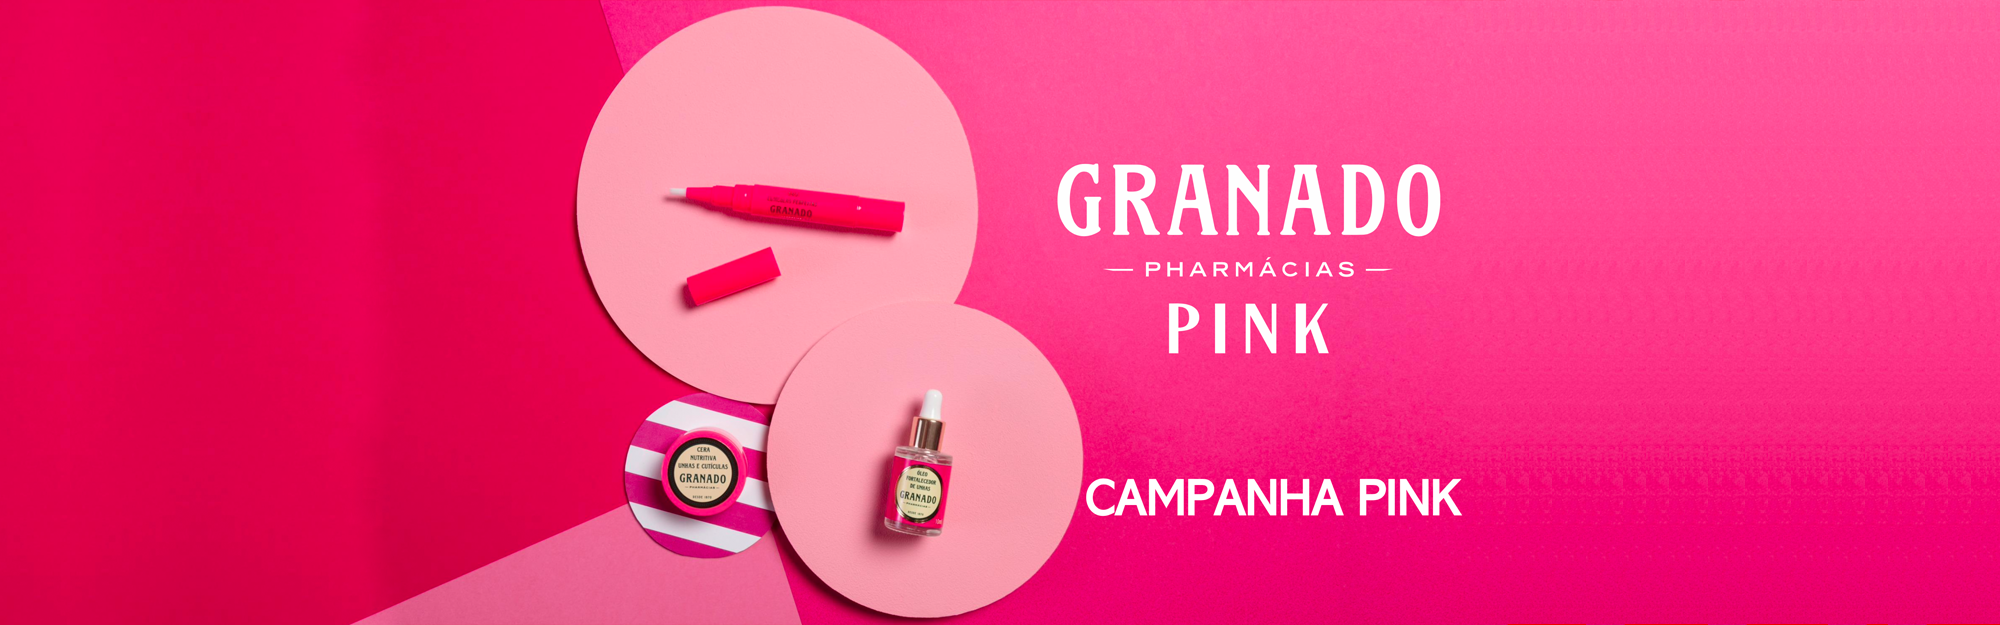 Campanha Pink